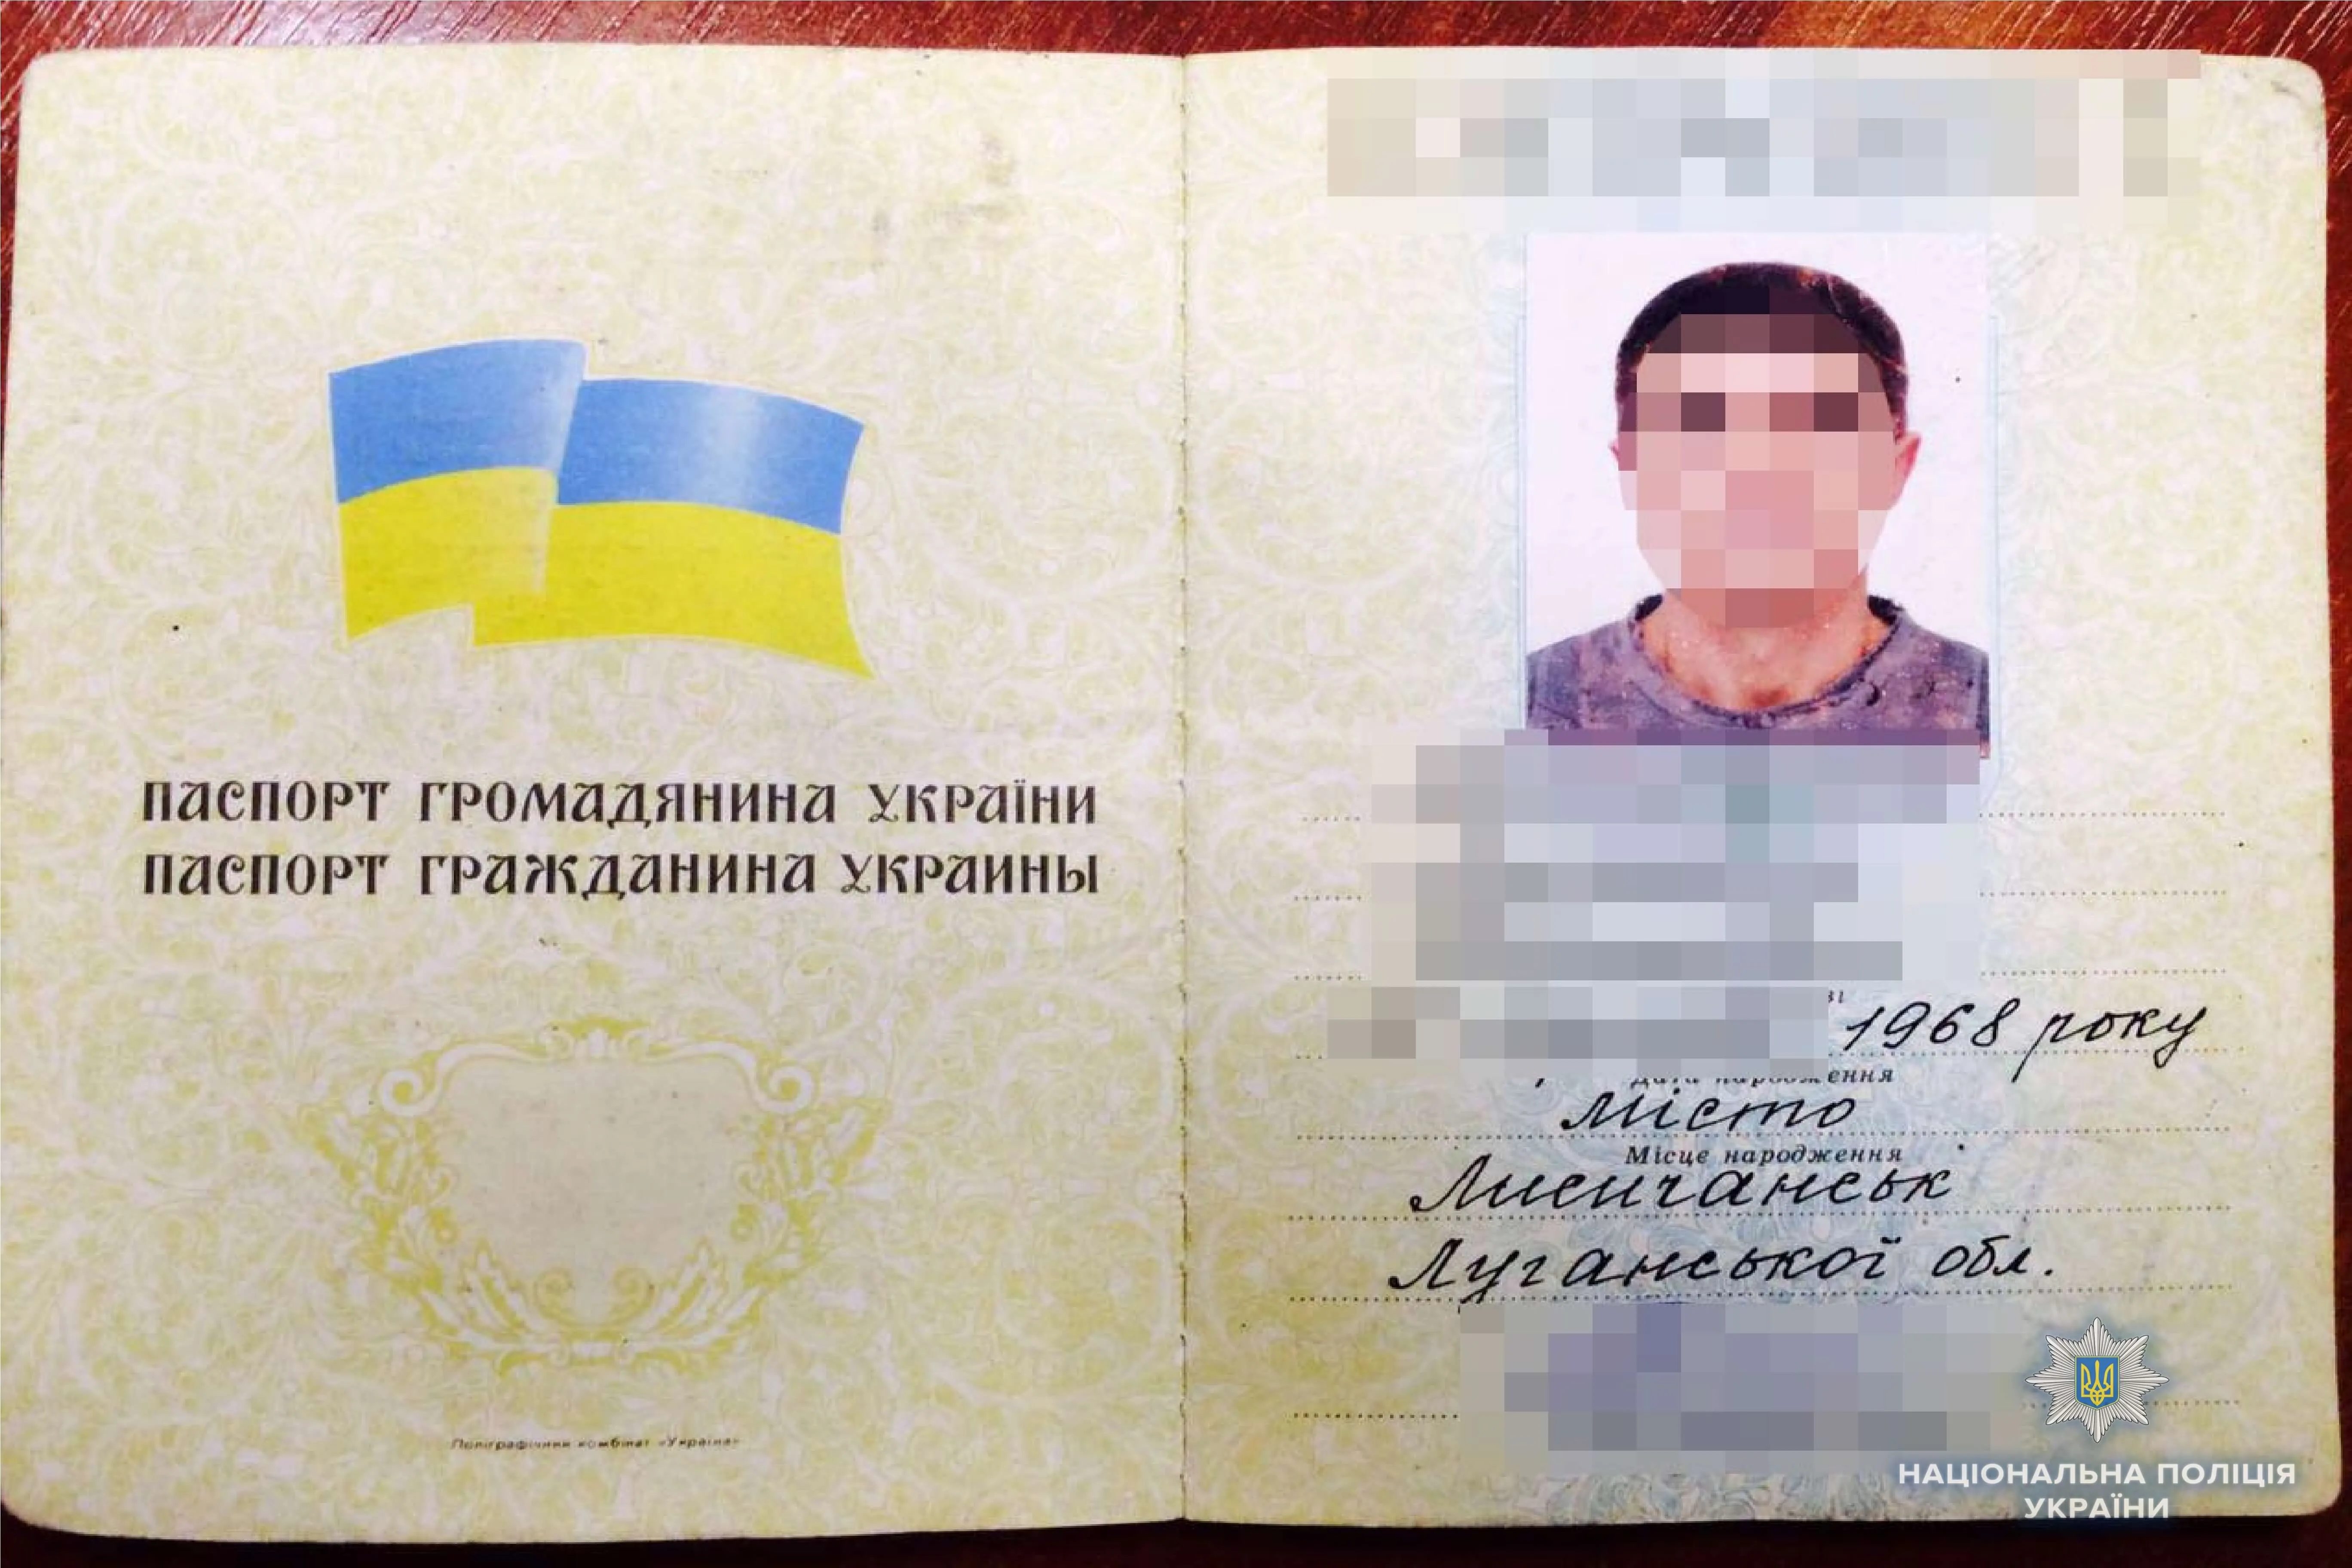  Паспорт 50-річного уродженця Луганської області 